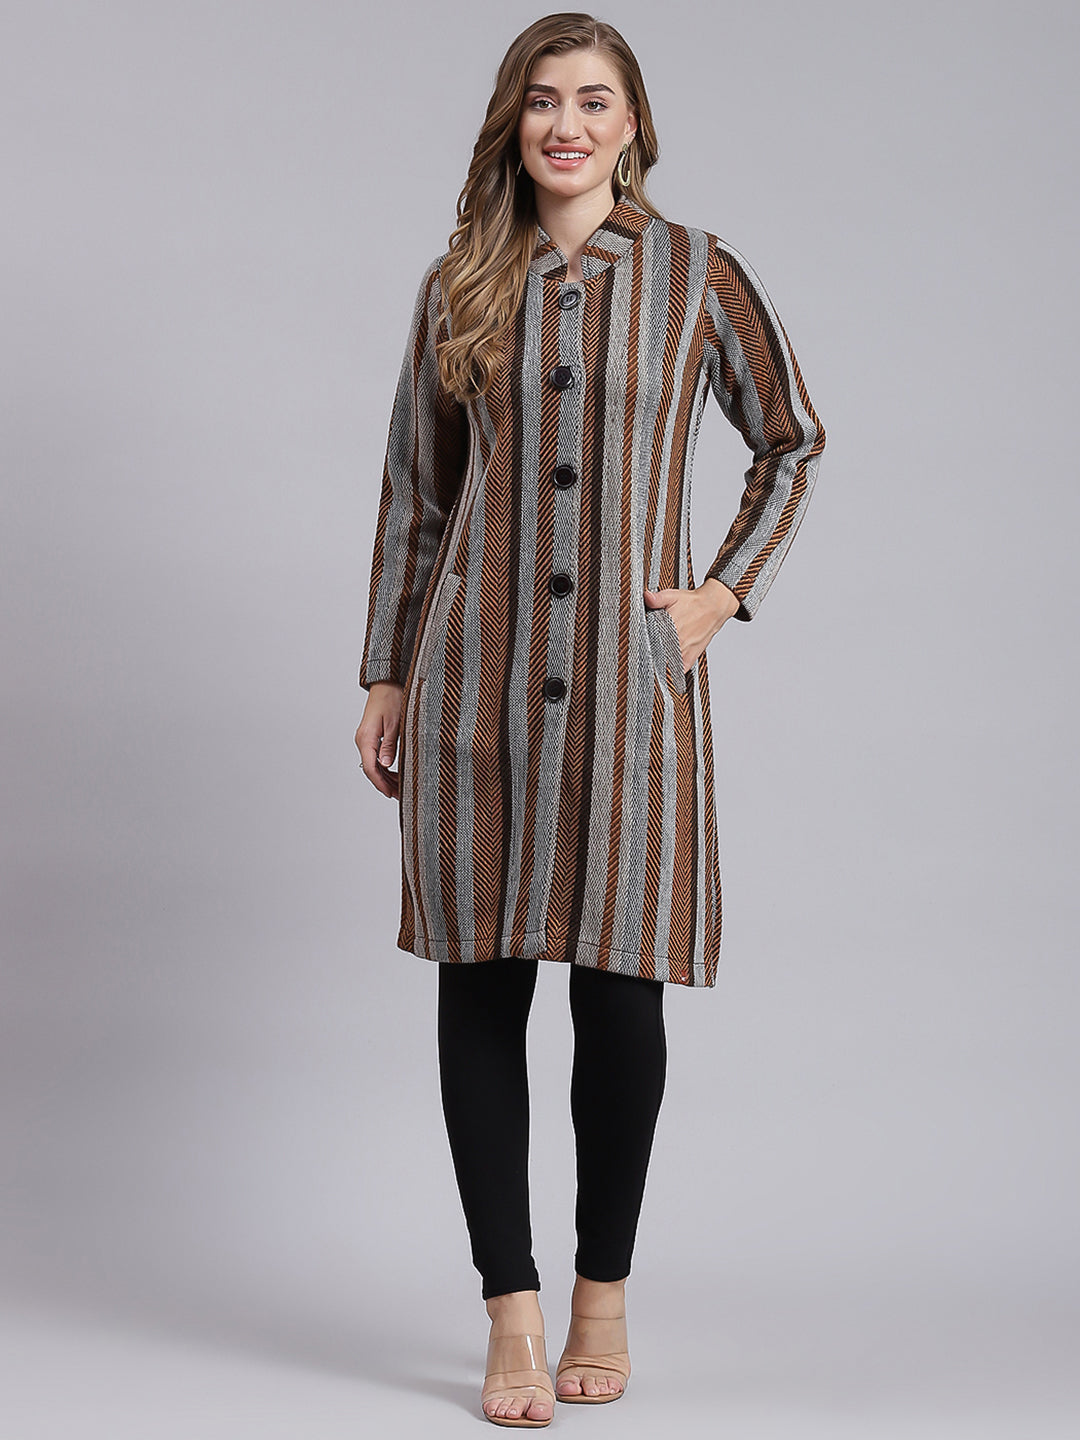 Designer Wool Coats, Women's Wool Jackets